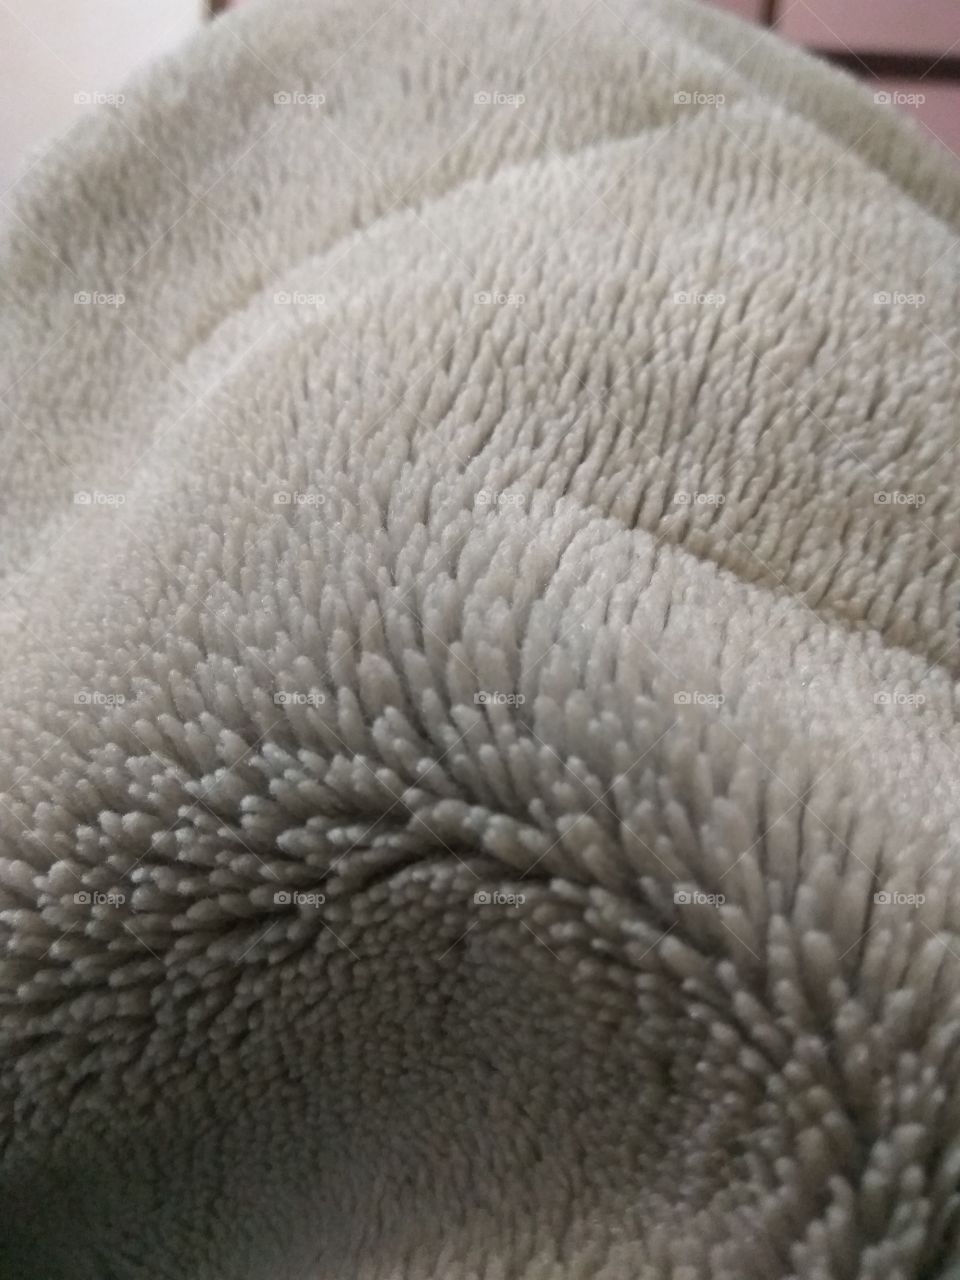 Blanket texture